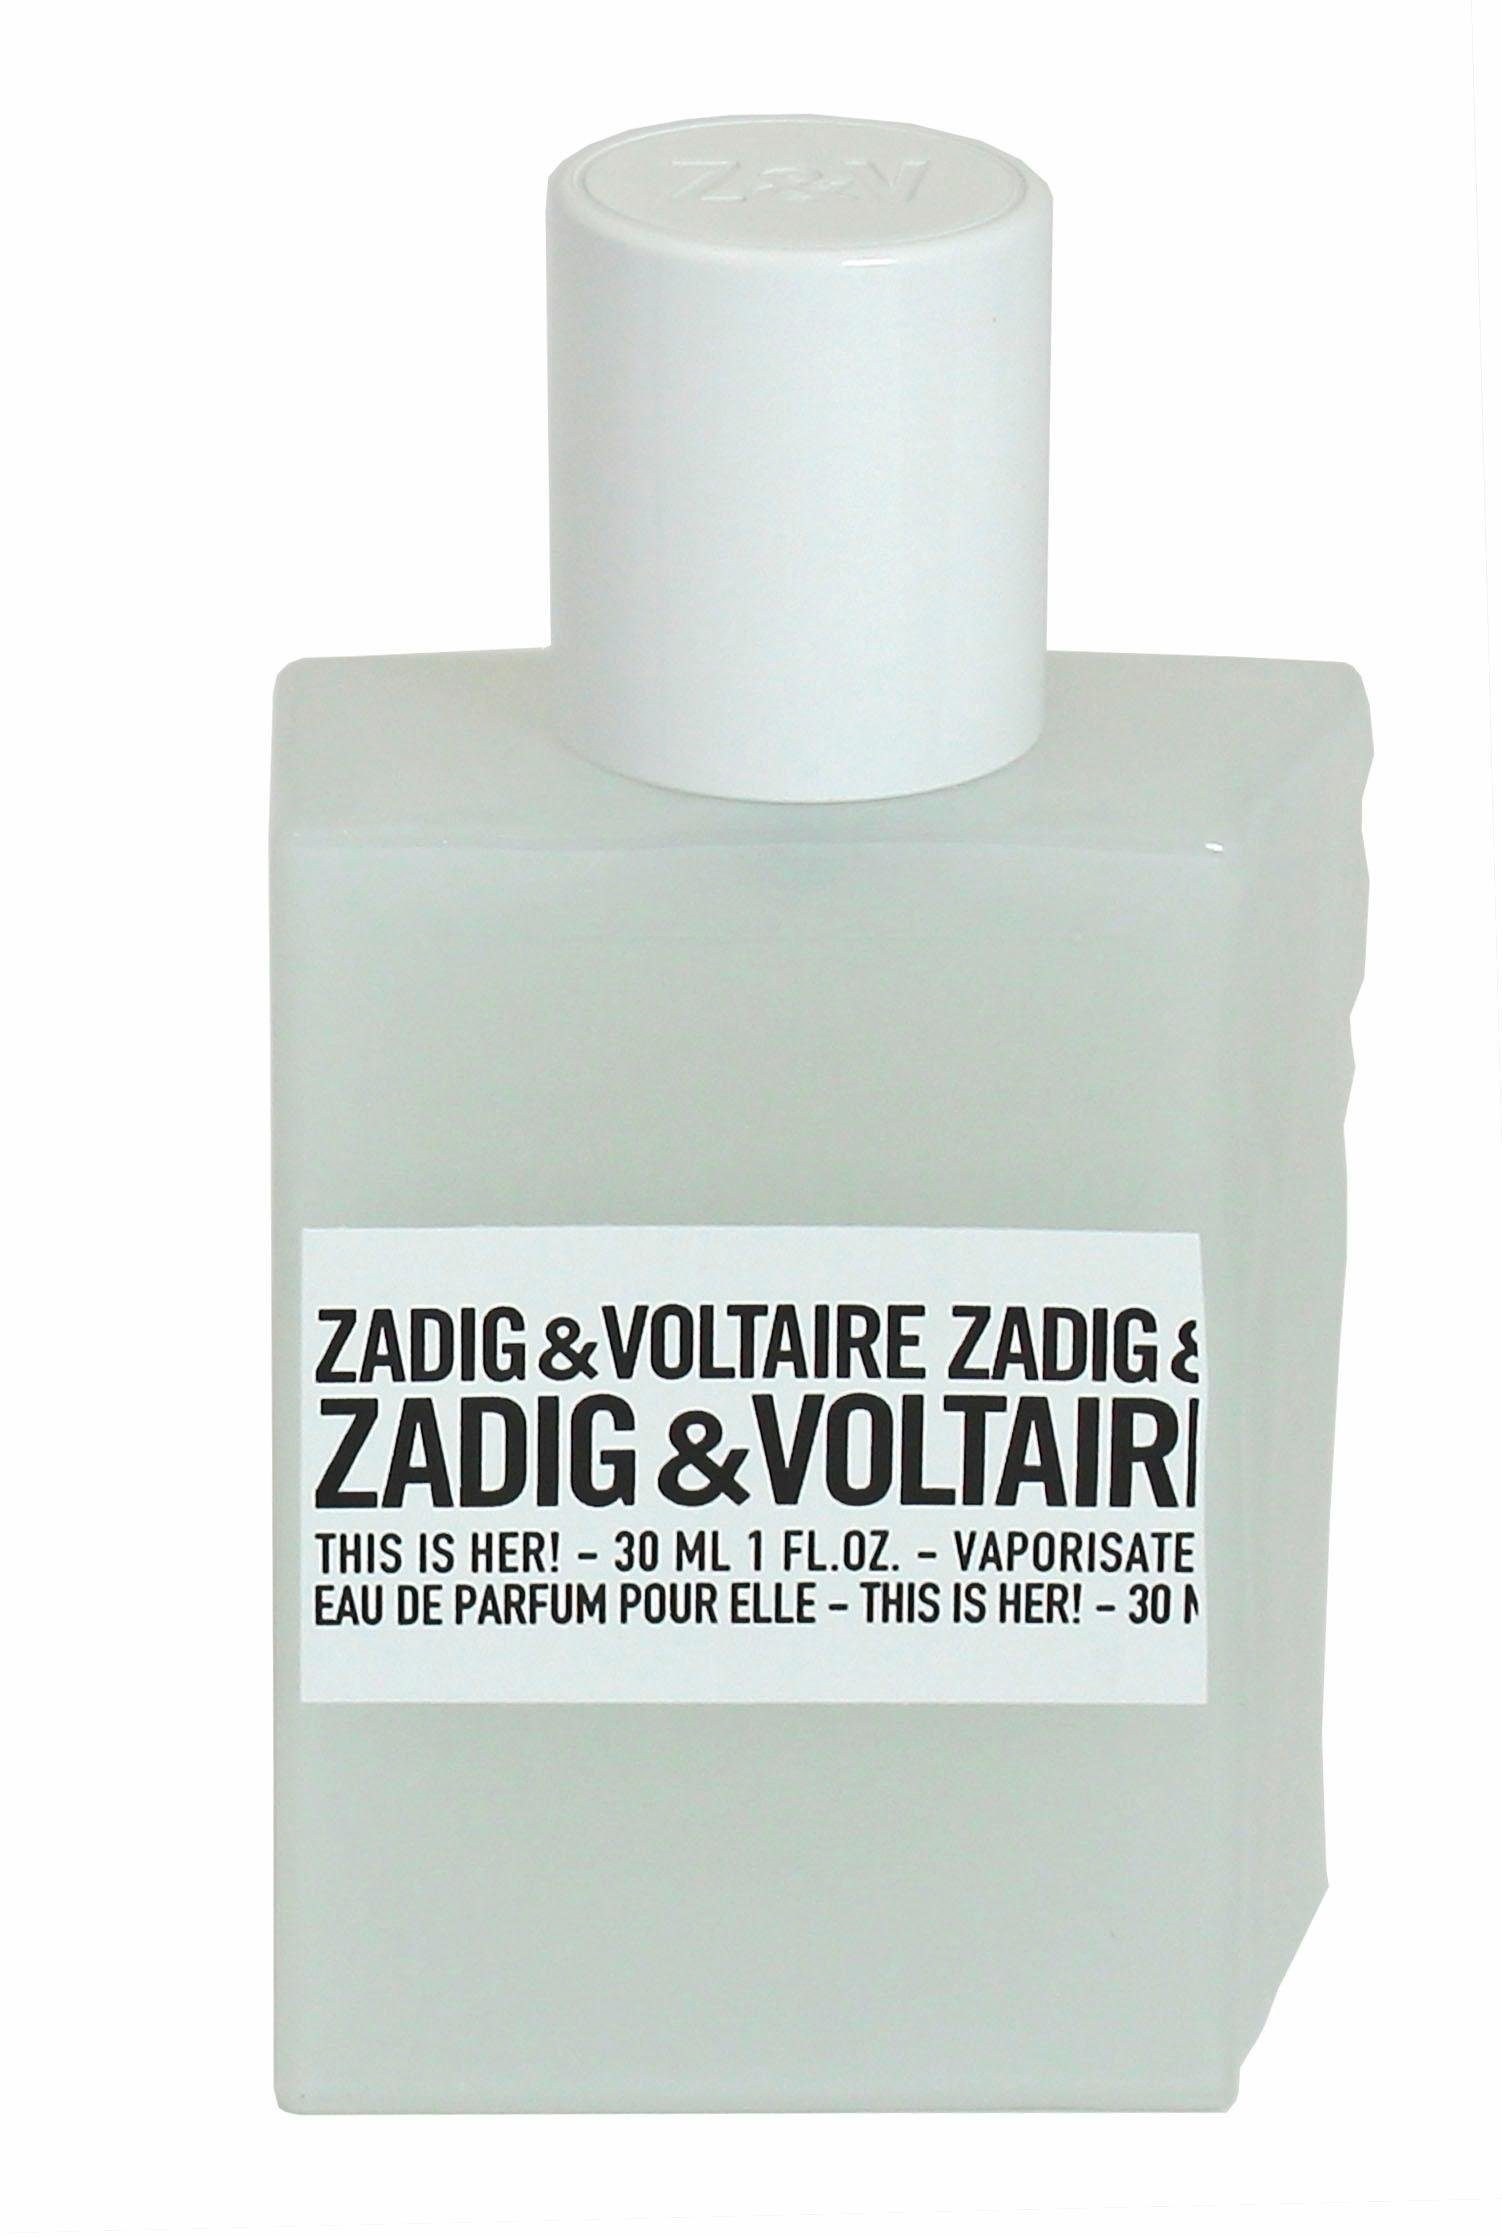 ZADIG & VOLTAIRE Eau Parfum This Her! is de